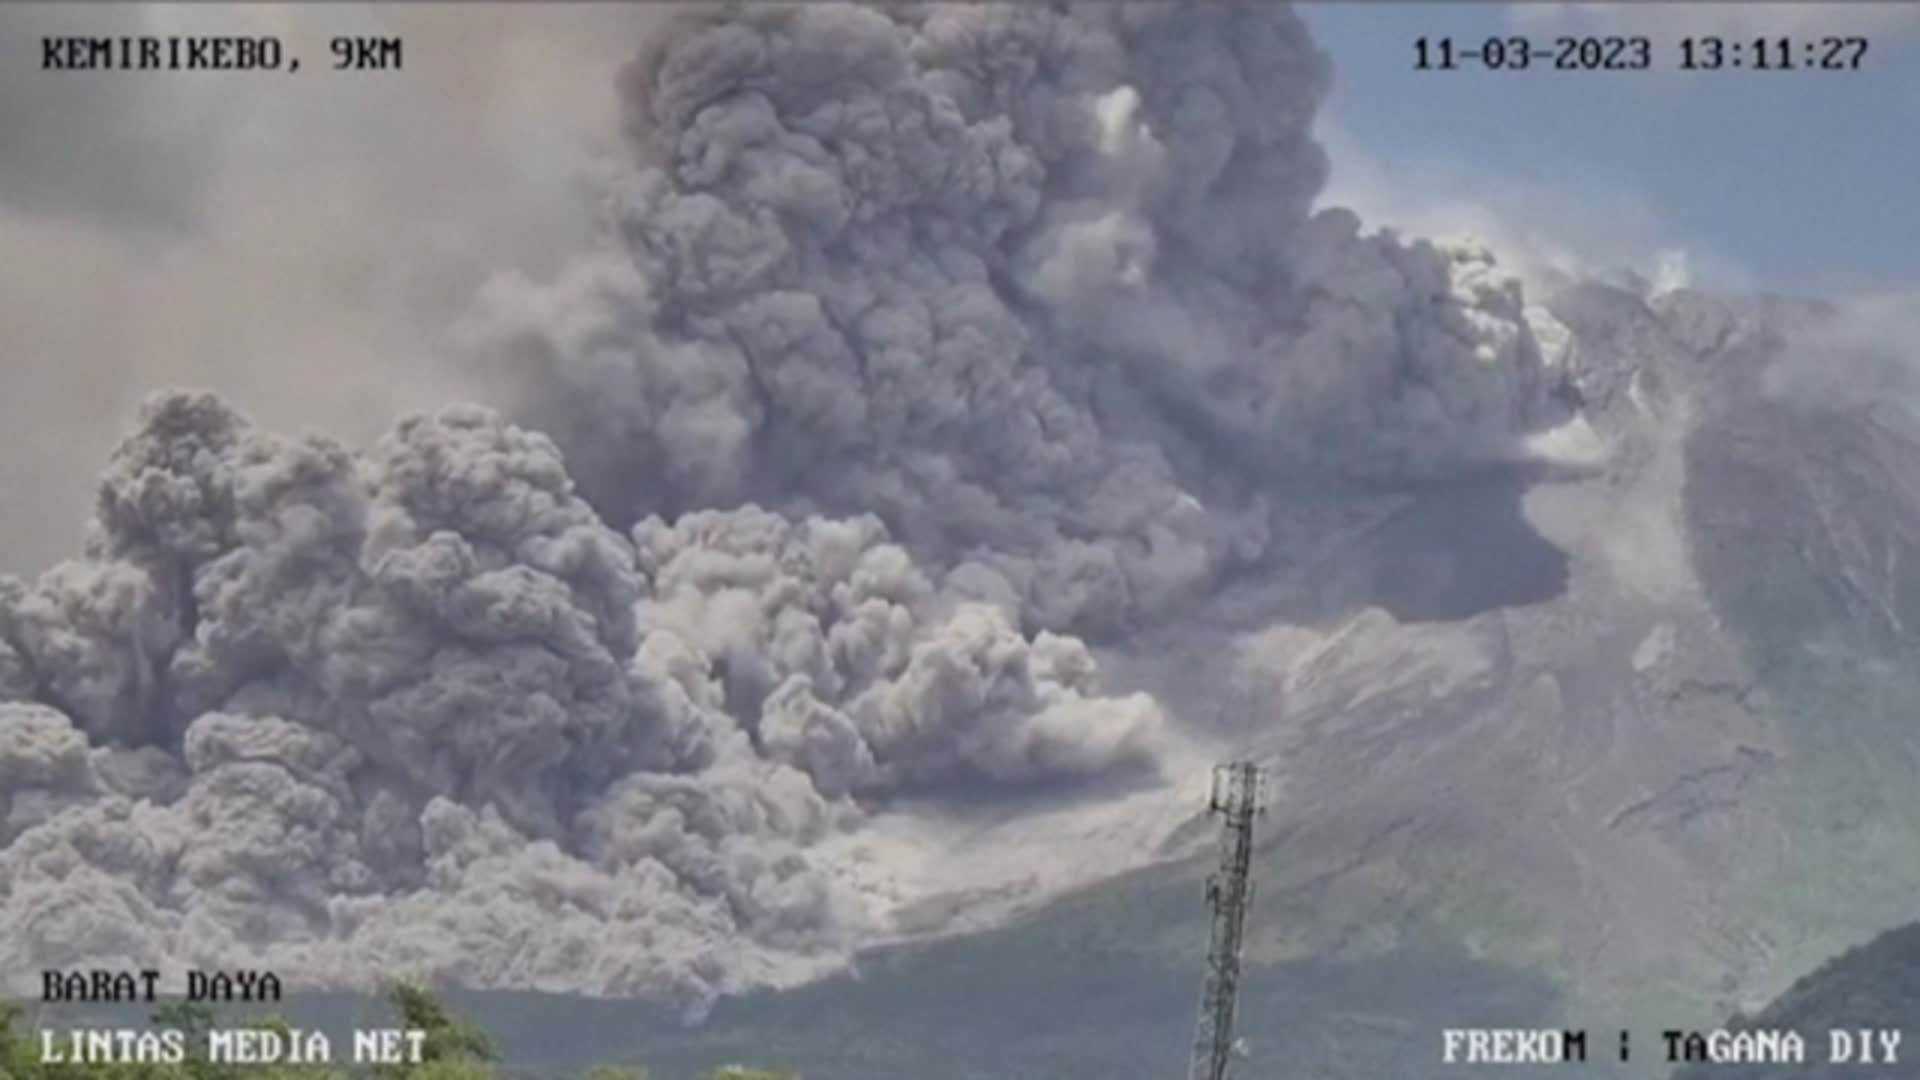 Indonésie : le volcan Merapi, sur l'île de Java, crache des nuages